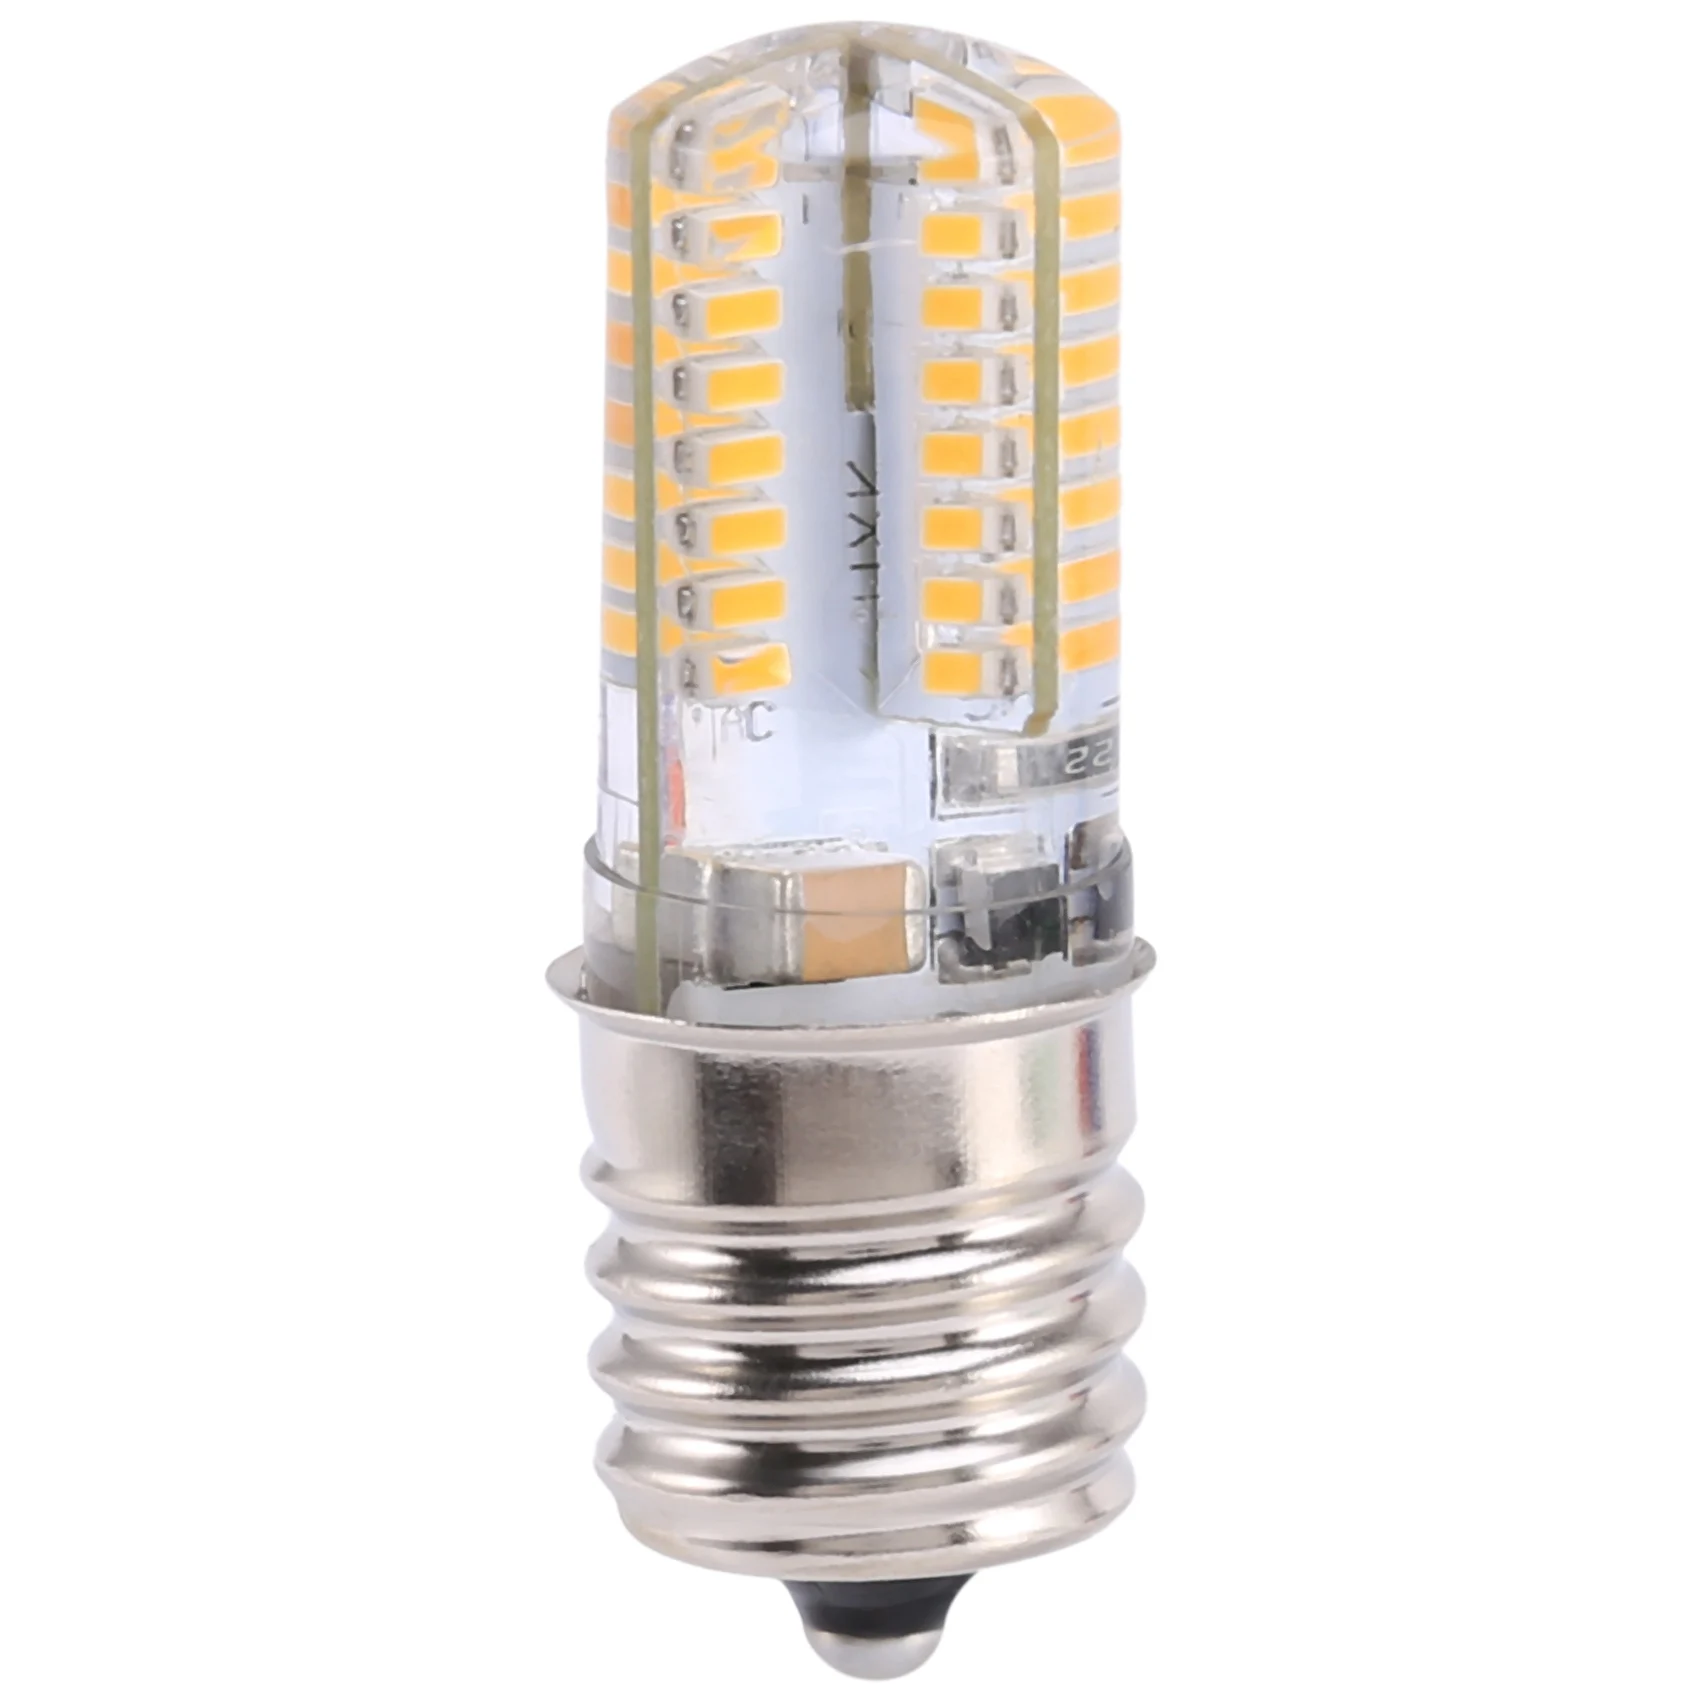 

E17 Socket 5W 64 LED Lamp Bulb 3014 SMD Light Warm White AC 110V-220V